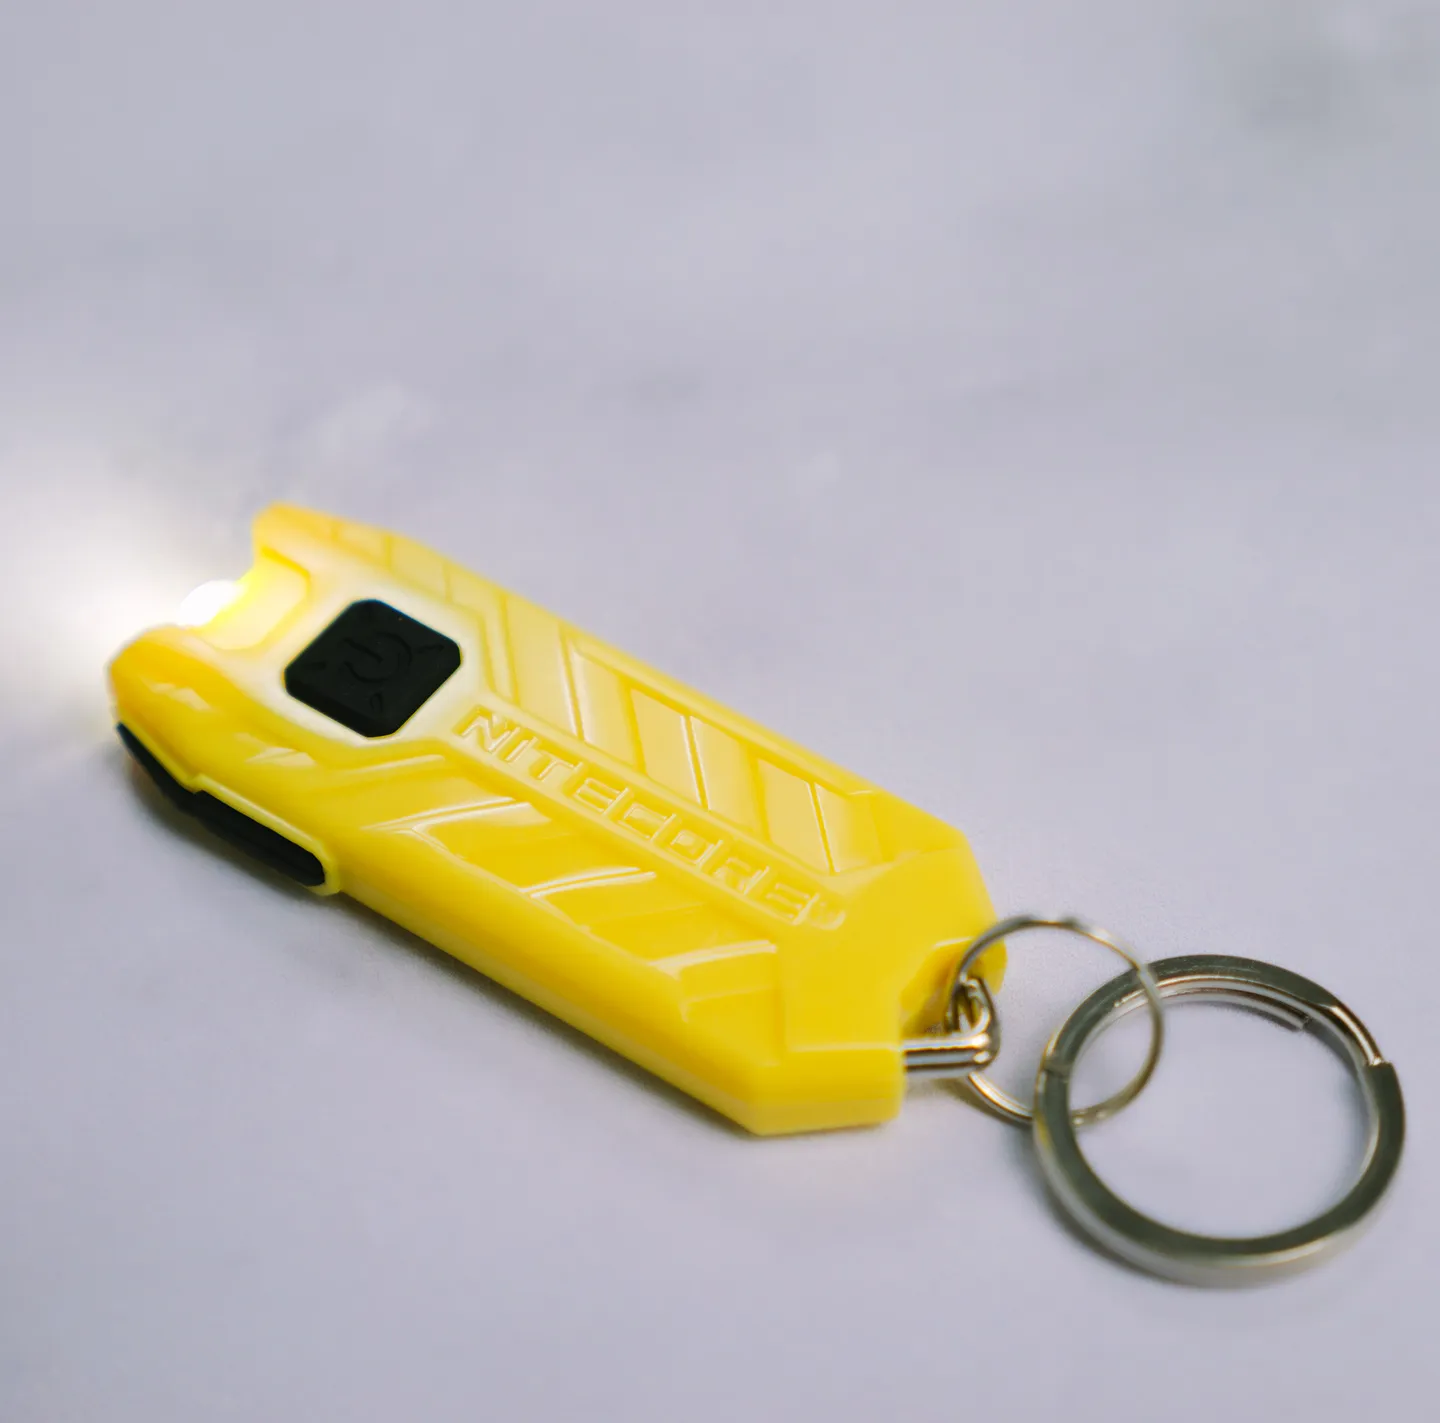 Alarmas y linternas - Linterna de seguridad recargable Tube amarillo limón